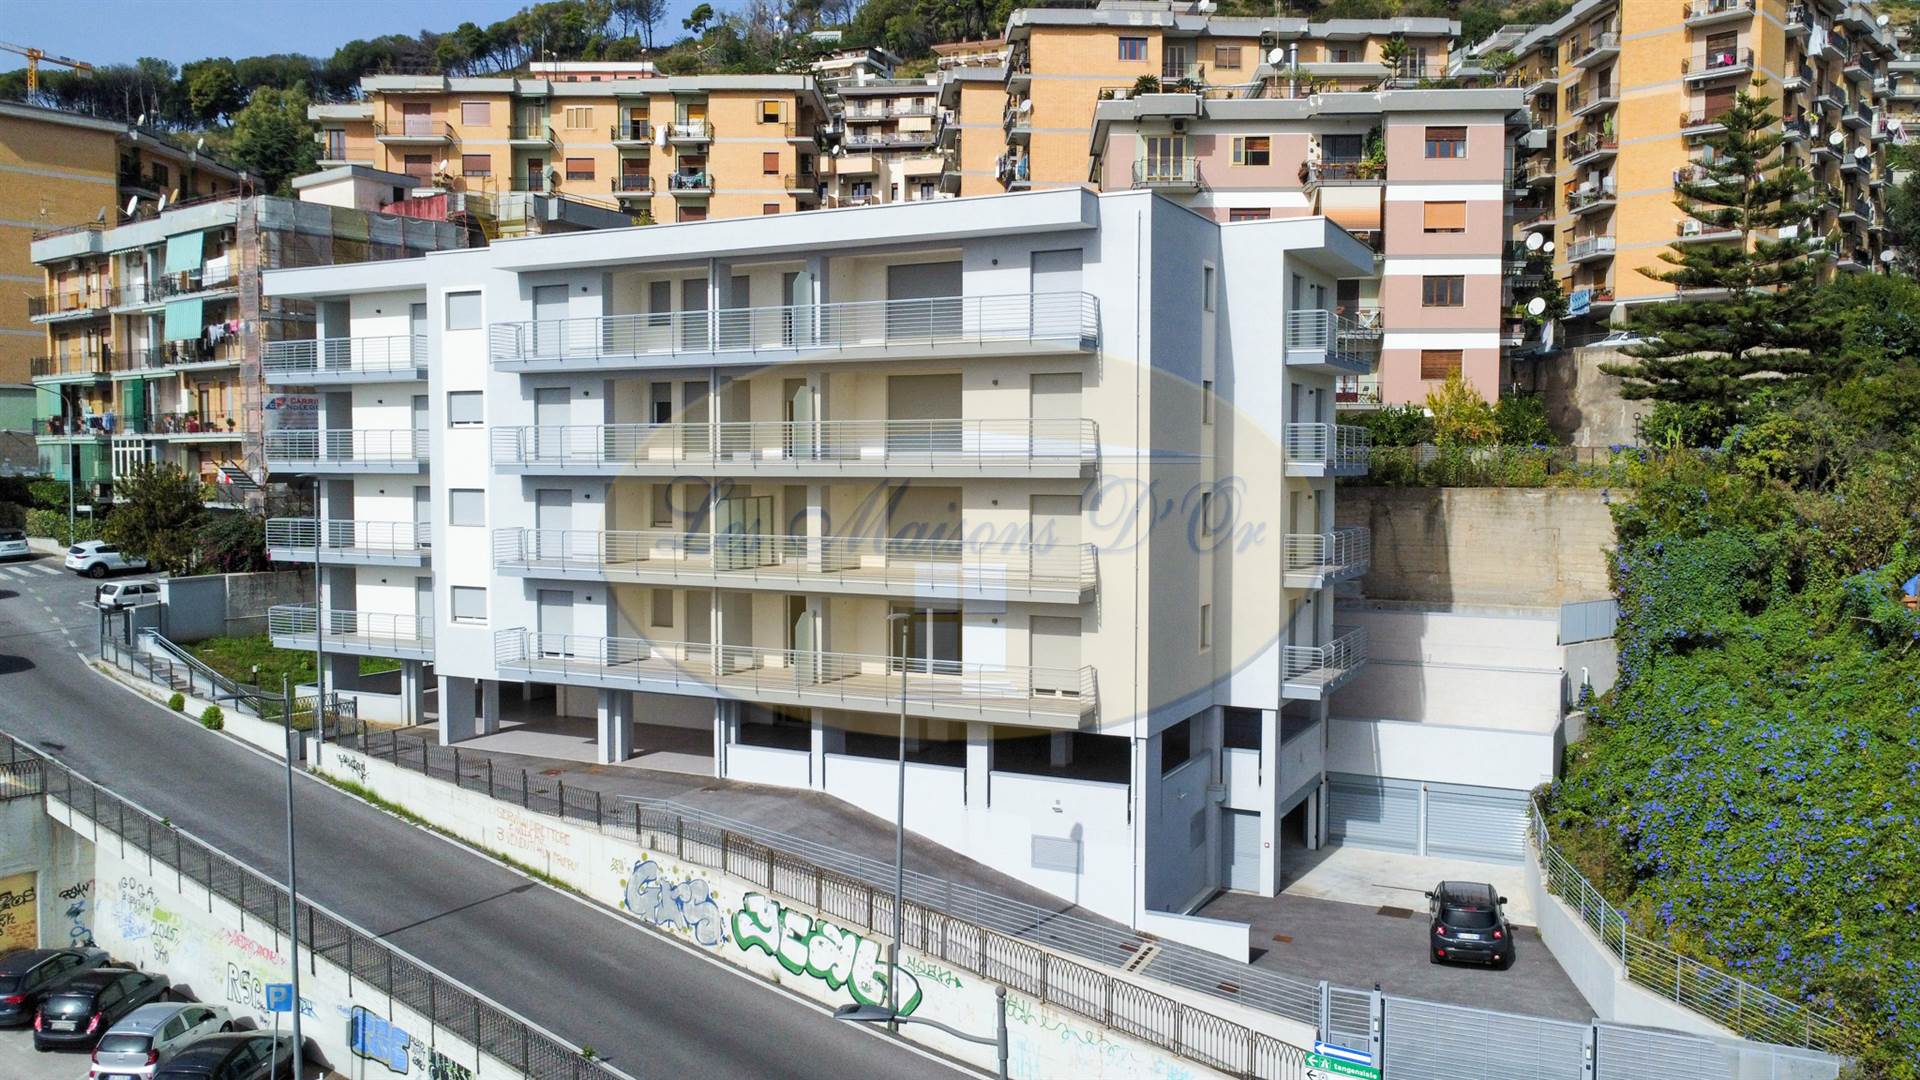 Trilocale in nuova costruzione in zona Torrione Alto a Salerno